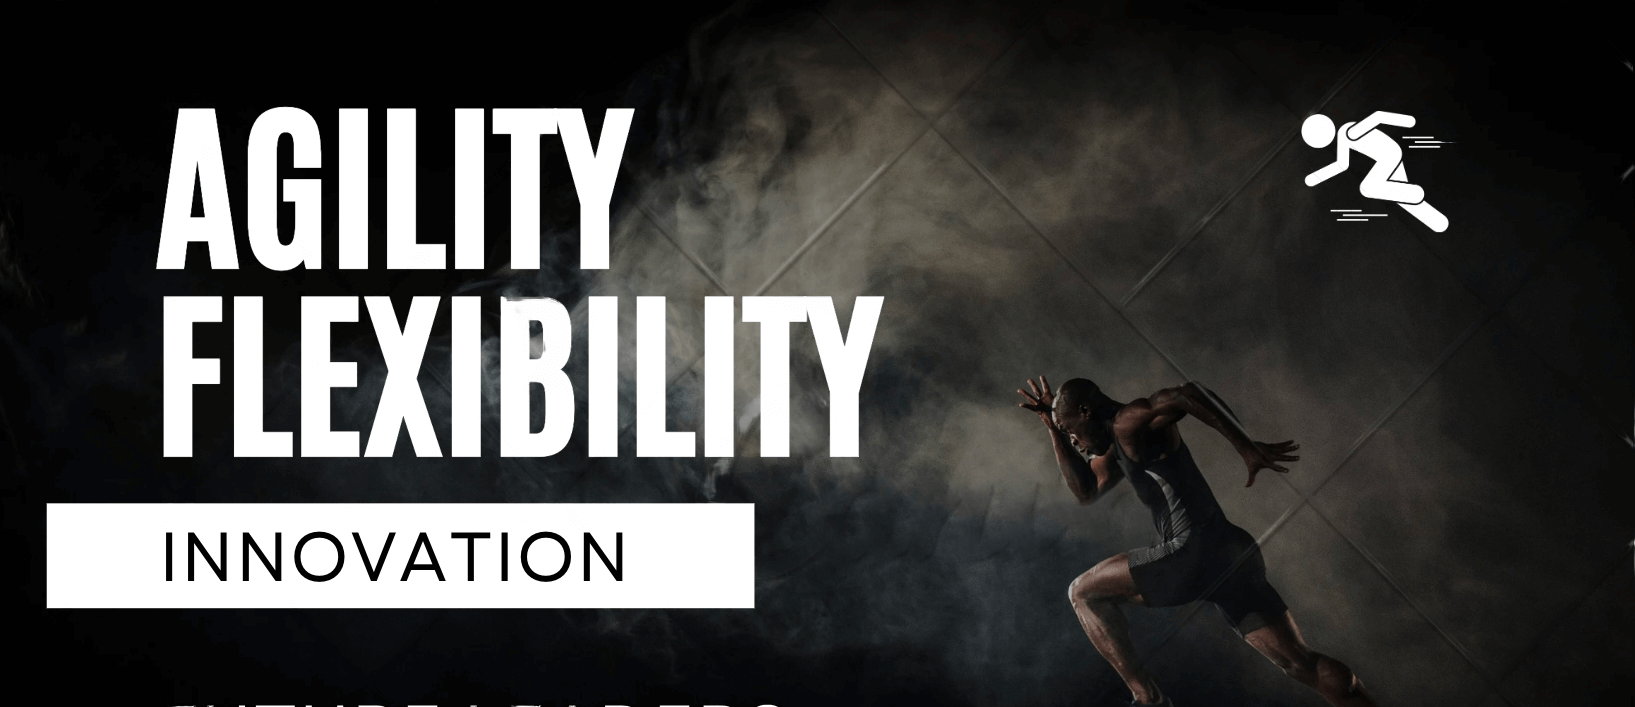 Agility flexibility